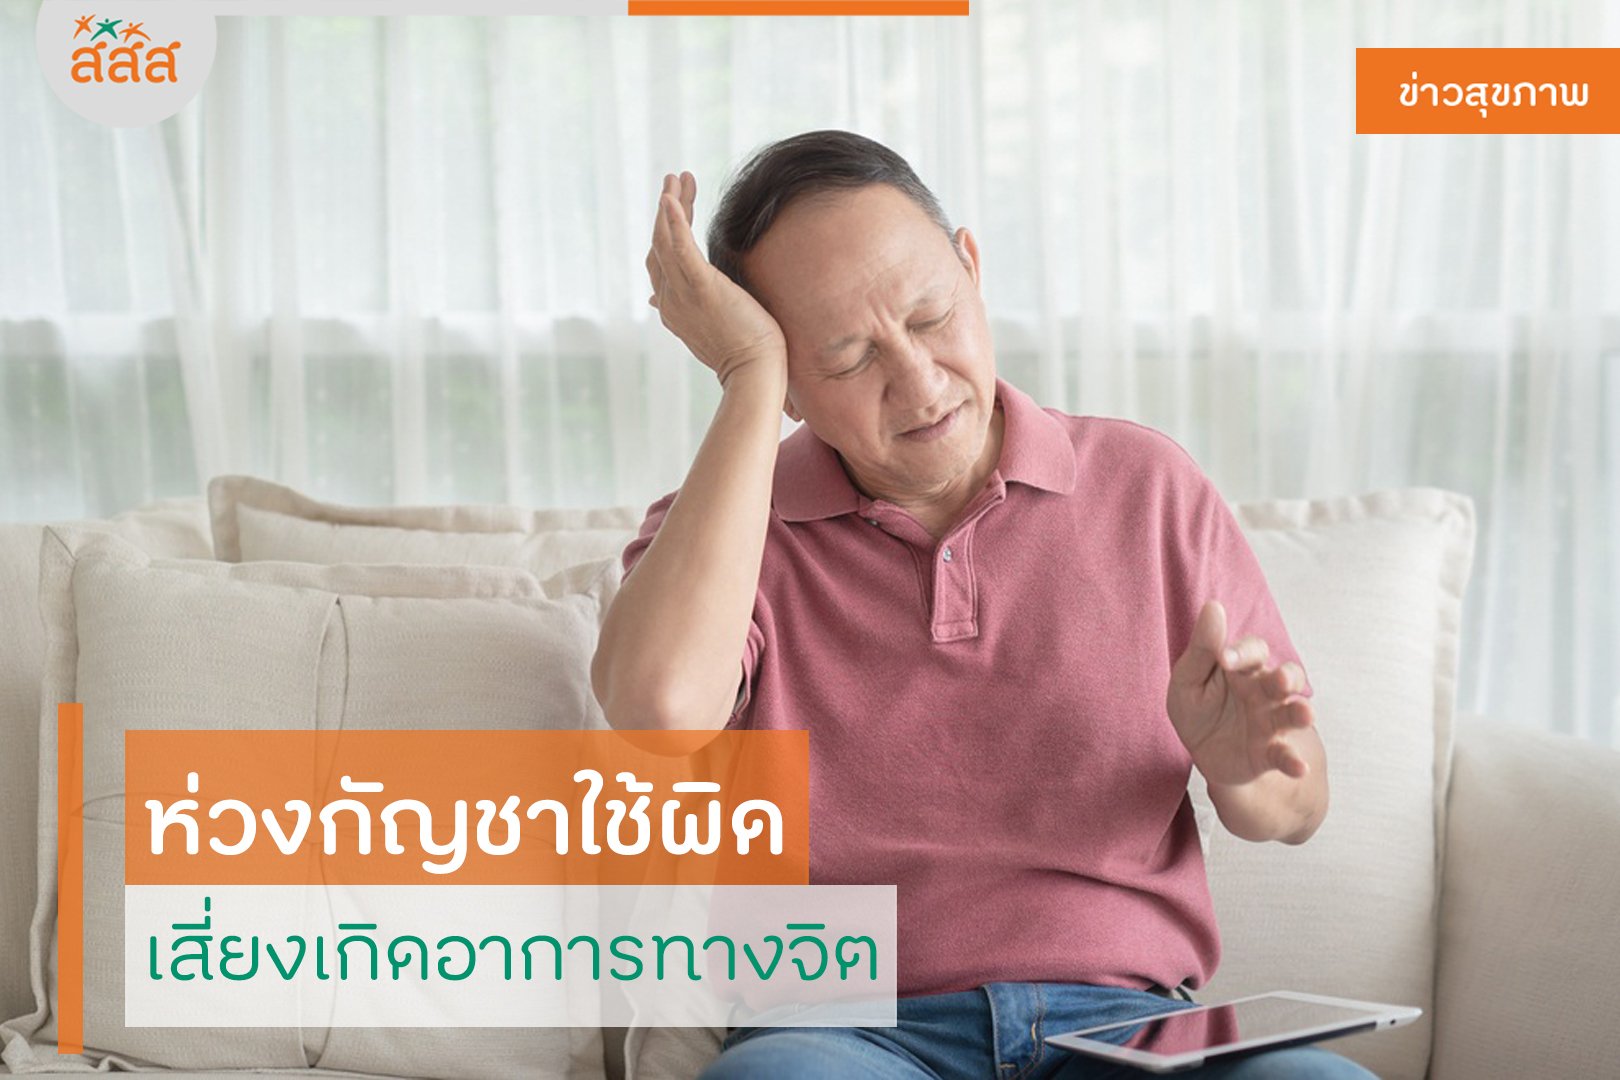 ห่วงกัญชาใช้ผิด เสี่ยงเกิดอาการทางจิต thaihealth